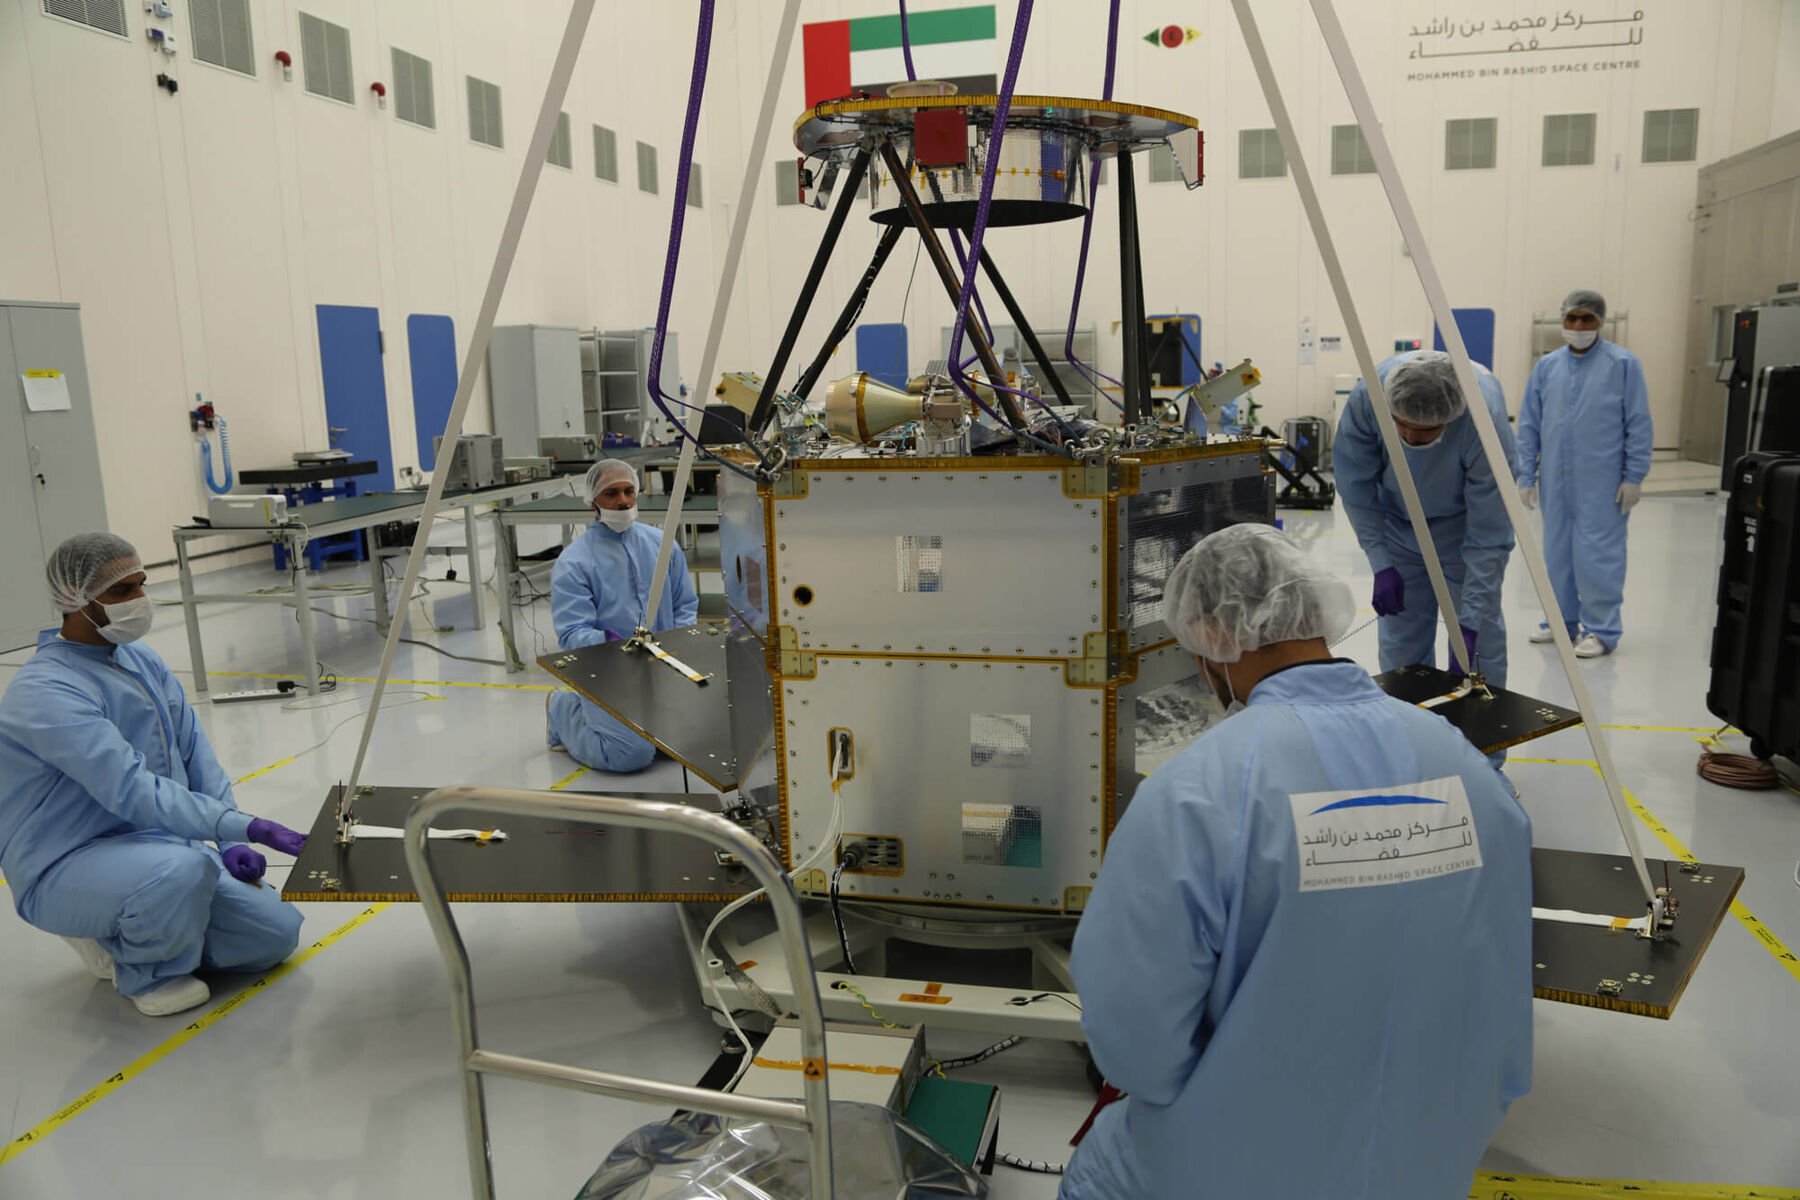 Arbeiten an einem Satelliten in Dubai